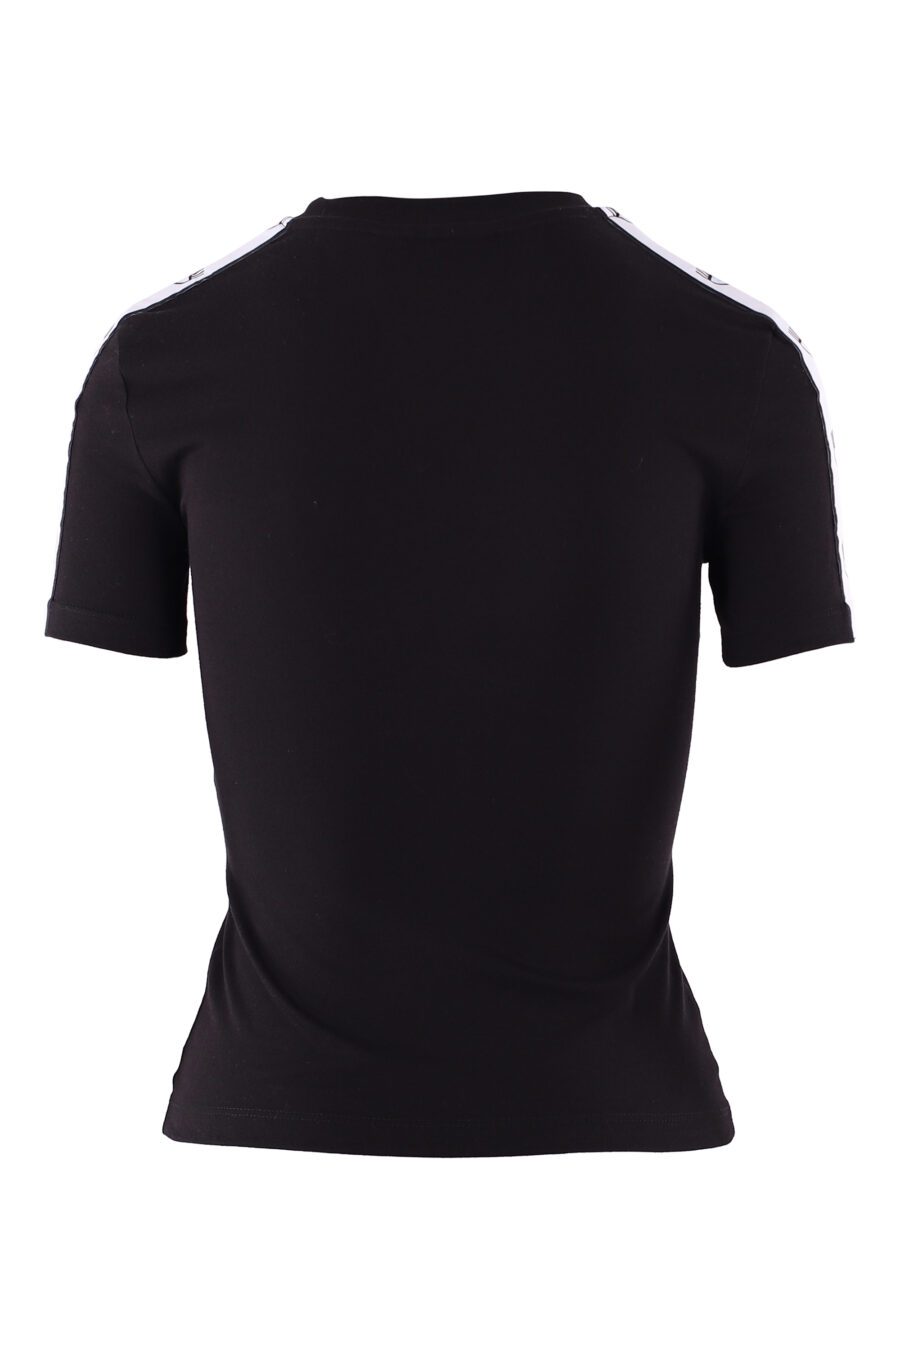 Black T-shirt with eye logo on sleeve band - IMG 6113